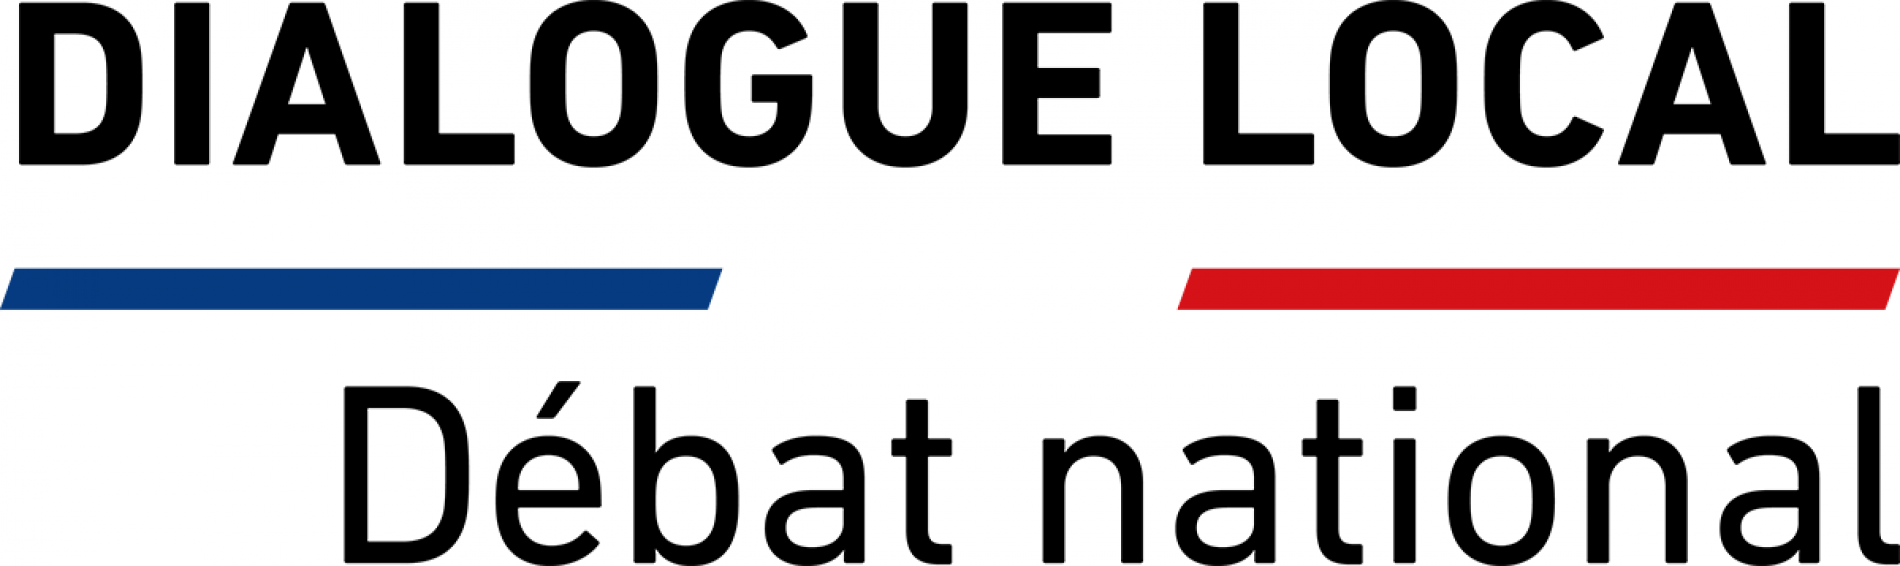 Dialogue local sur le débat national dans la ville de Neuilly-sur-Seine